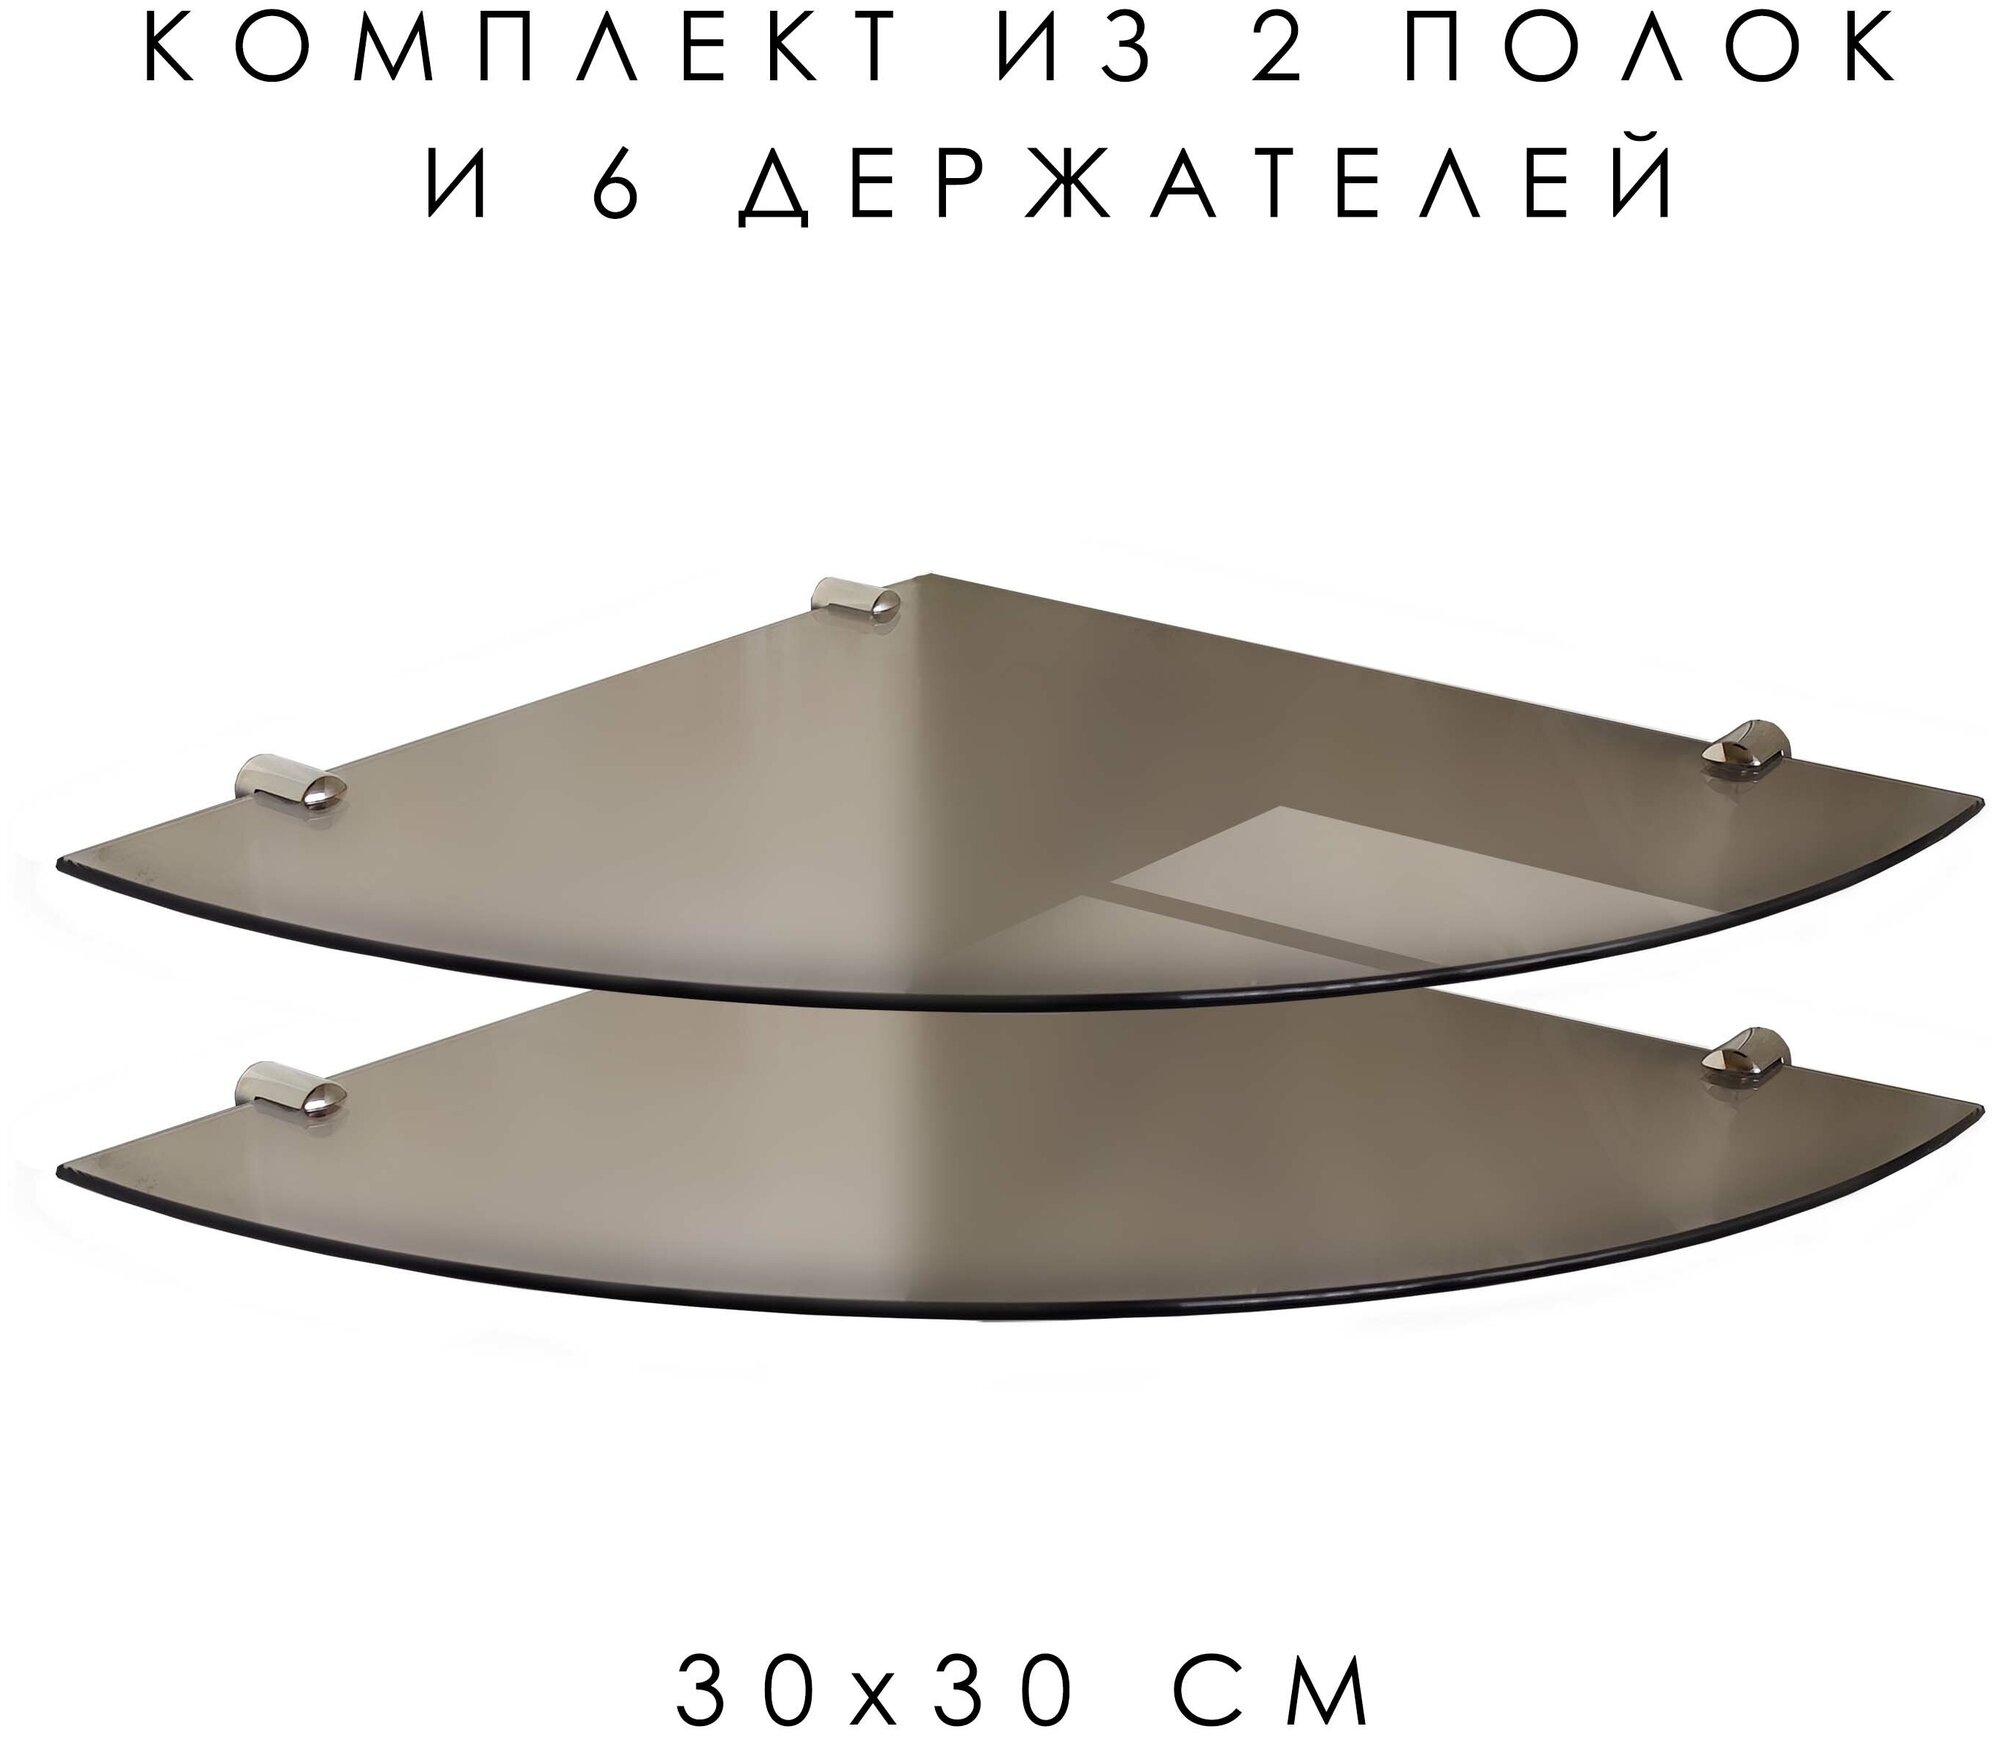 Полка угловая из закаленного стекла БРОНЗОВАЯ+ хром крепеж 300х300 (Комплект 2 шт+6 держателей)